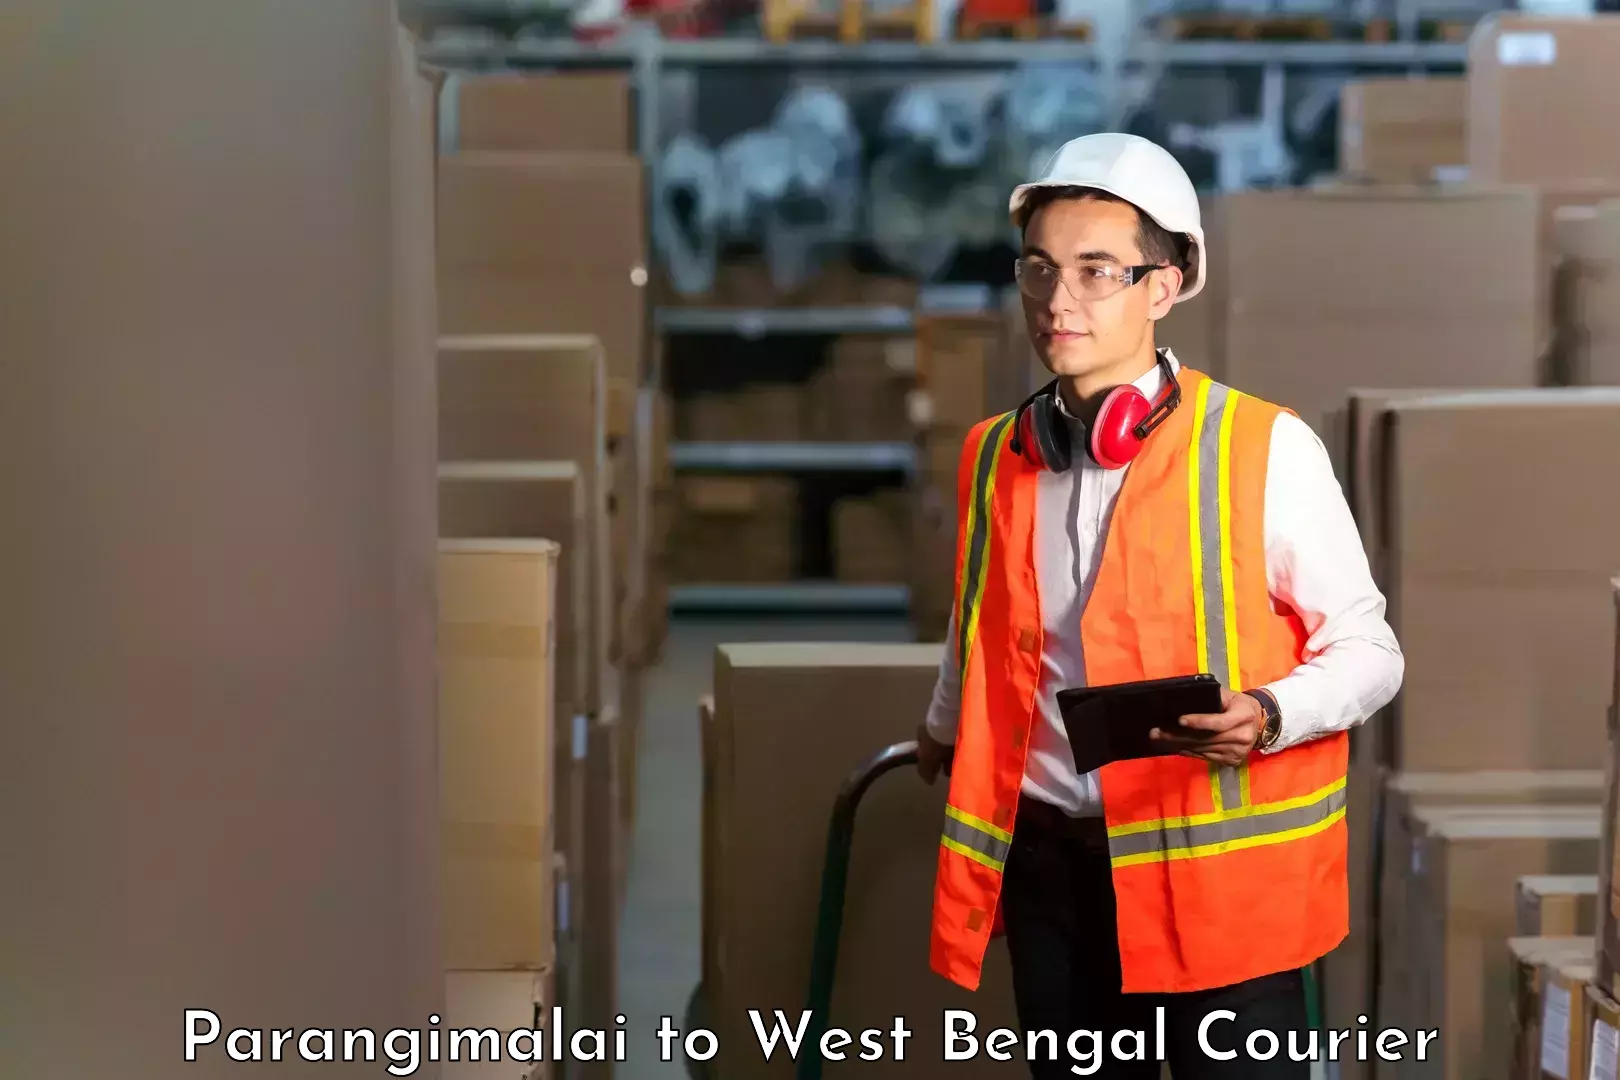 Efficient shipping platforms Parangimalai to West Bengal